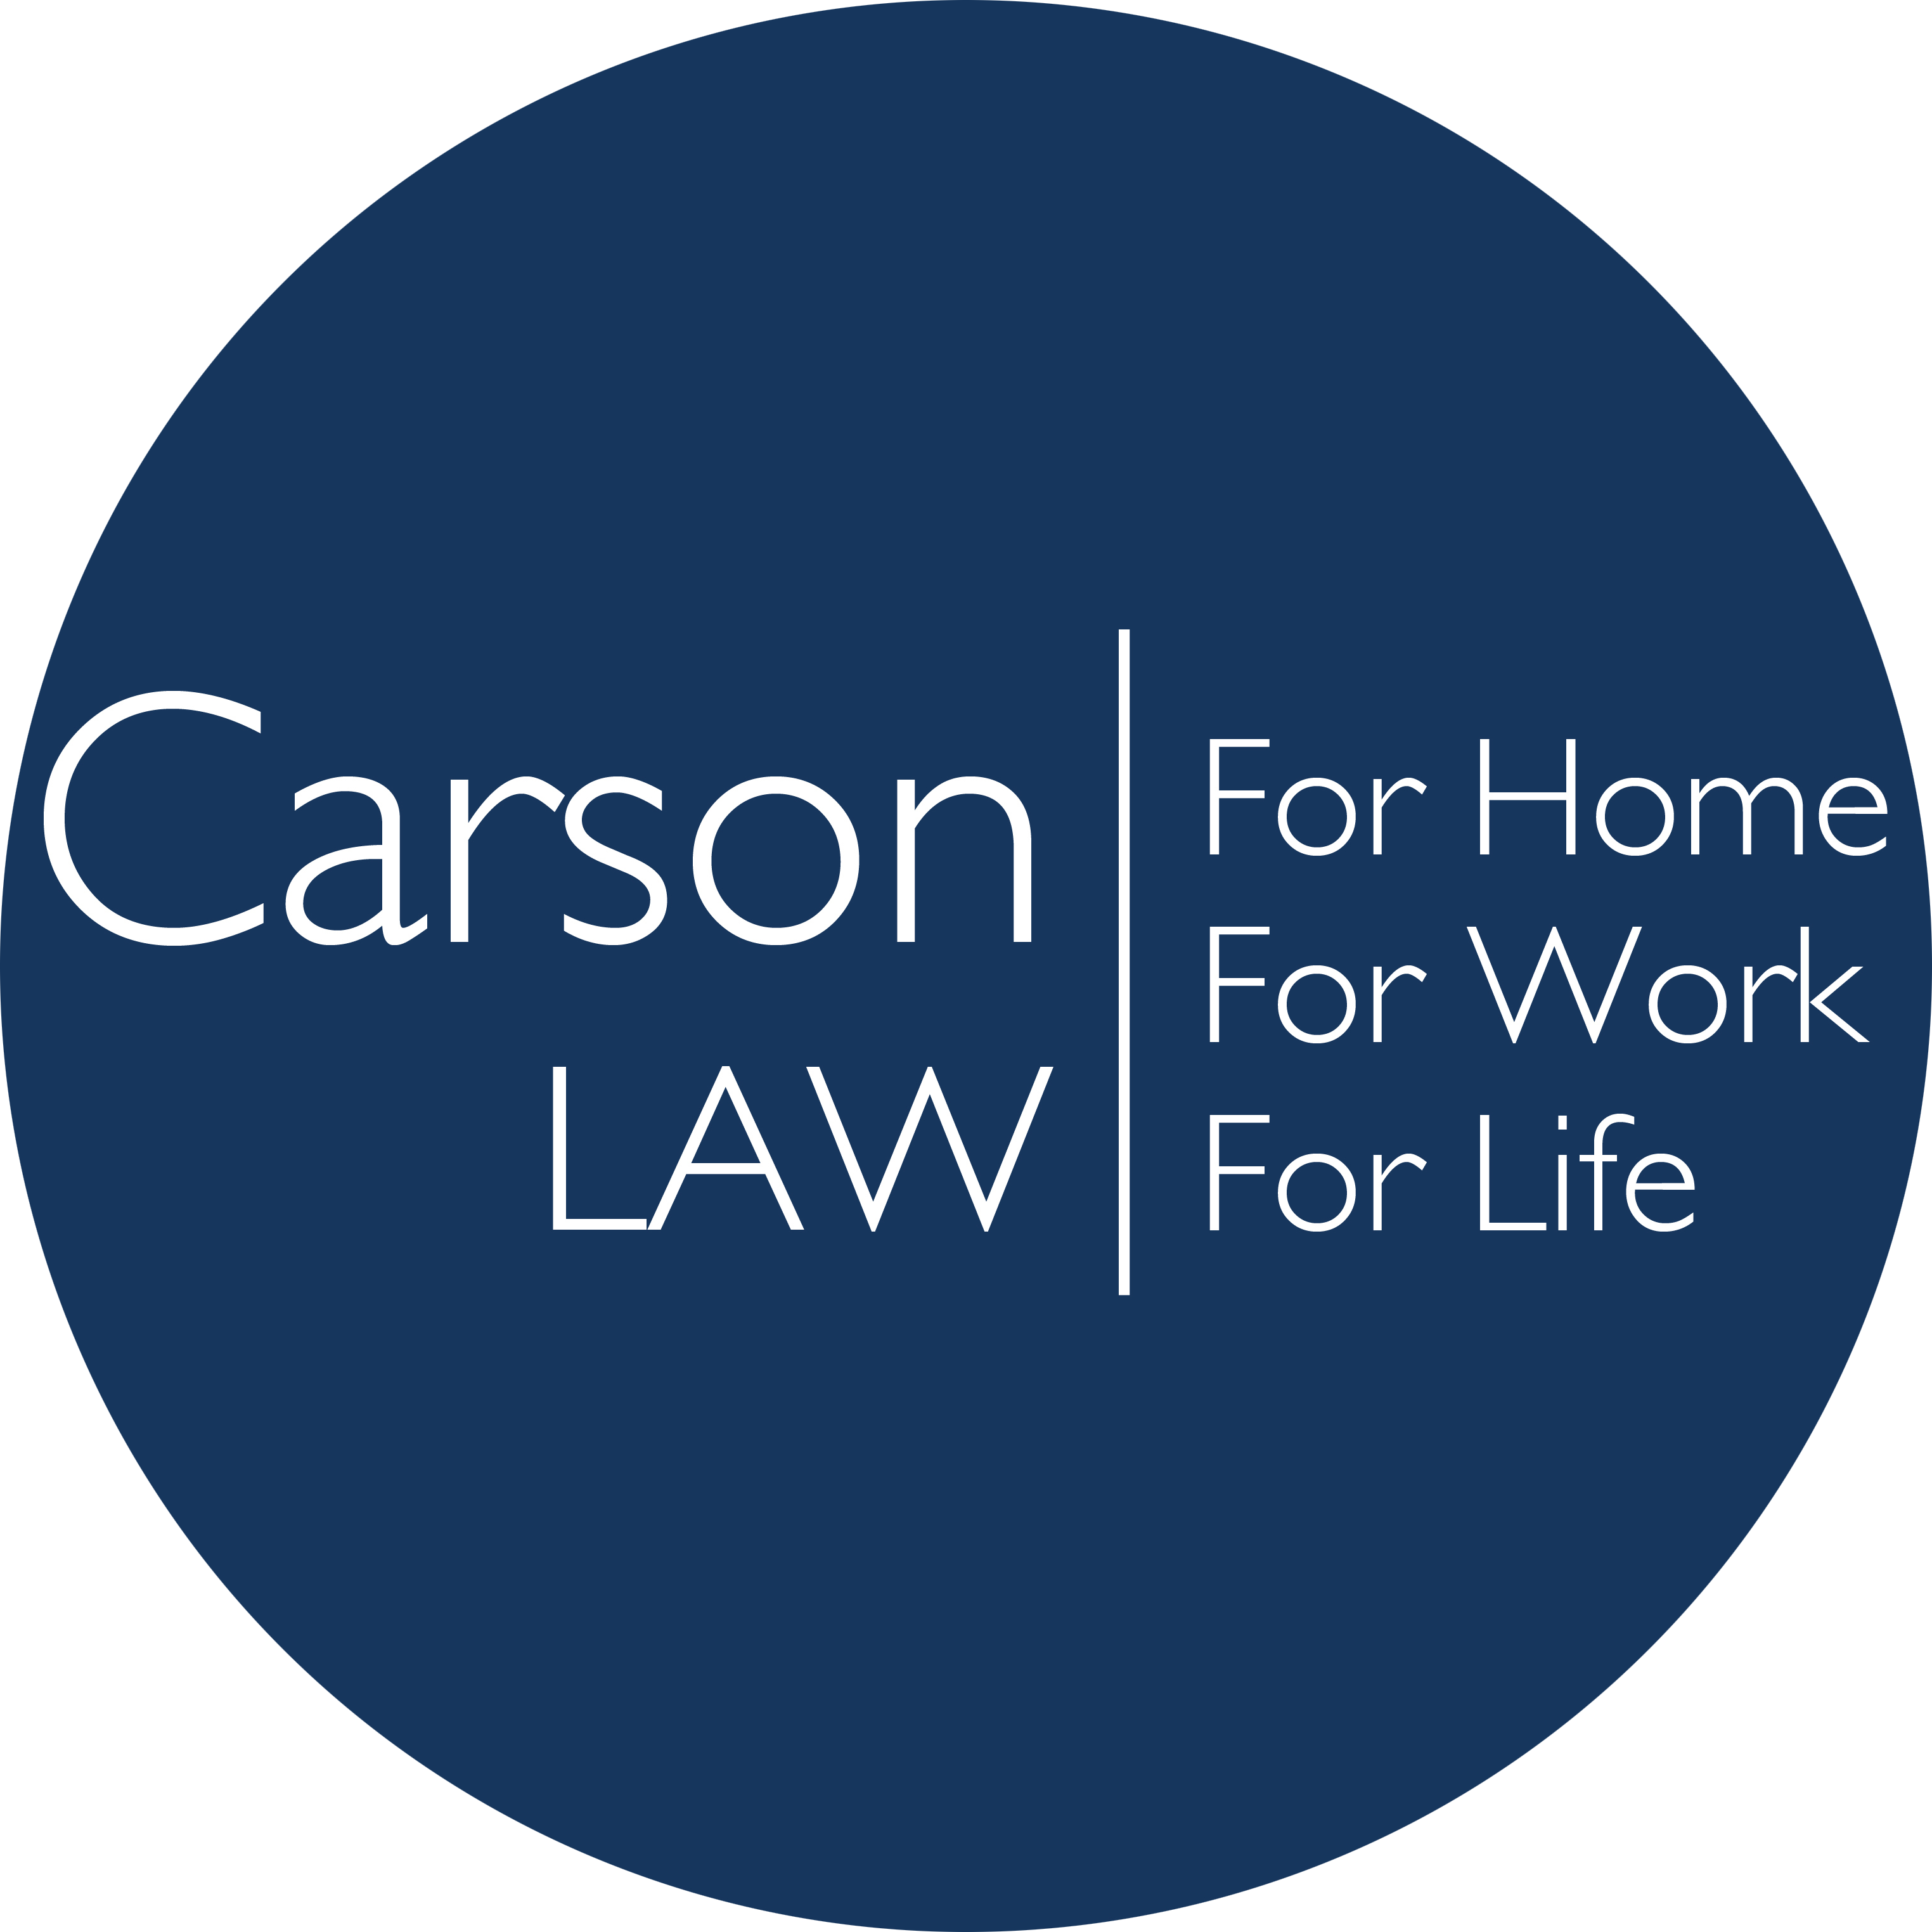 Carson Law